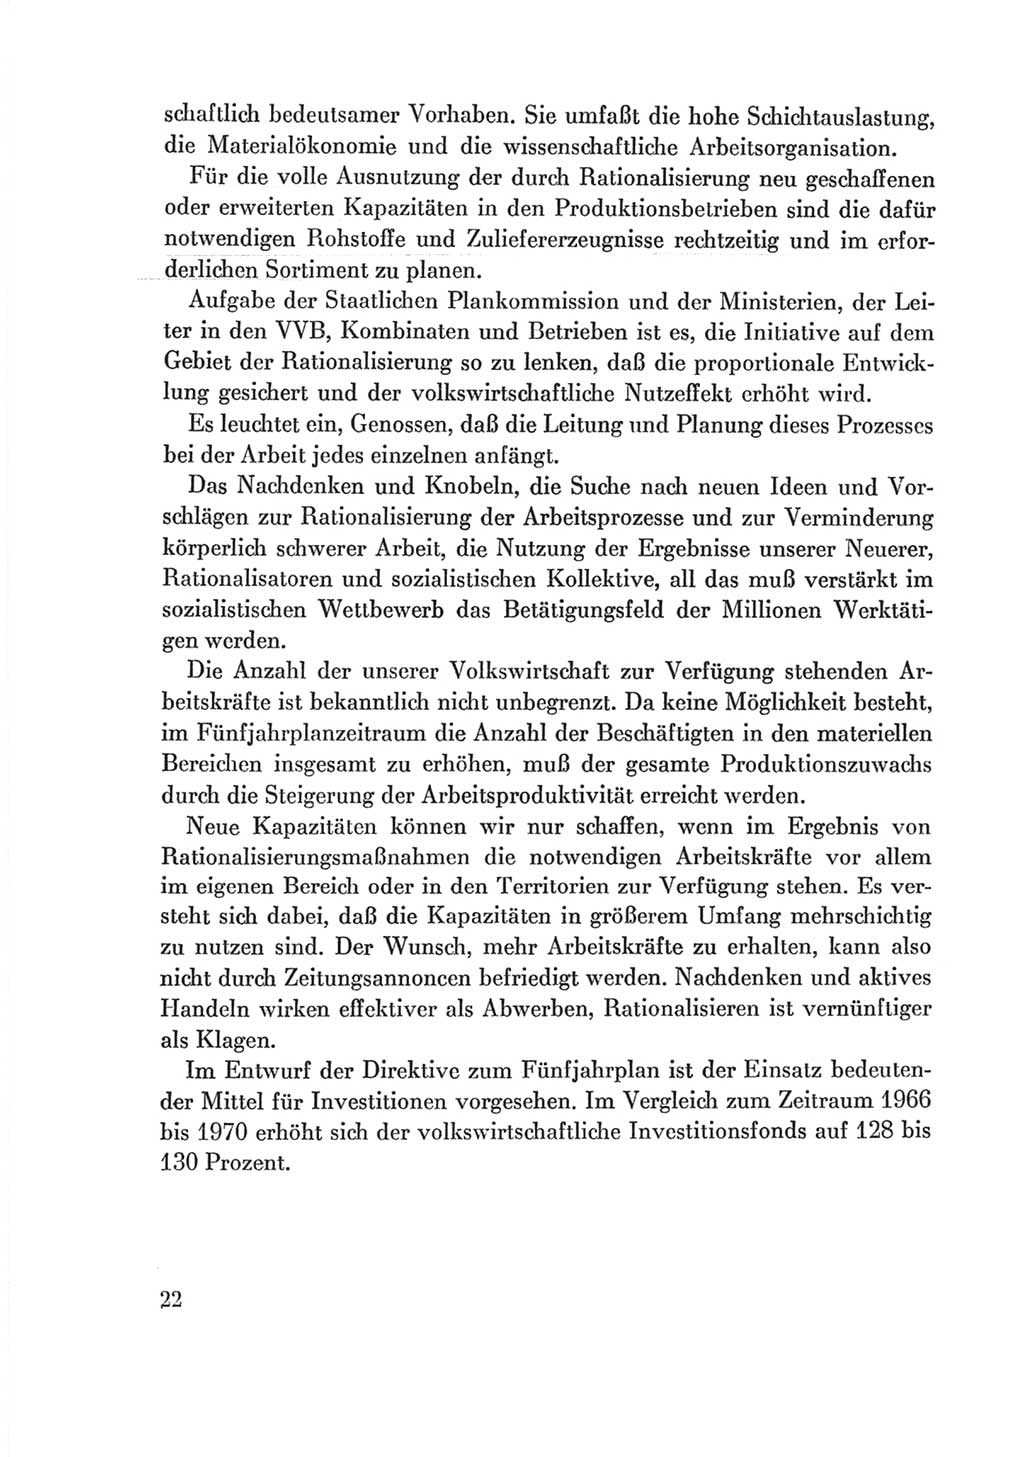 Protokoll der Verhandlungen des Ⅷ. Parteitages der Sozialistischen Einheitspartei Deutschlands (SED) [Deutsche Demokratische Republik (DDR)] 1971, Band 2, Seite 22 (Prot. Verh. Ⅷ. PT SED DDR 1971, Bd. 2, S. 22)